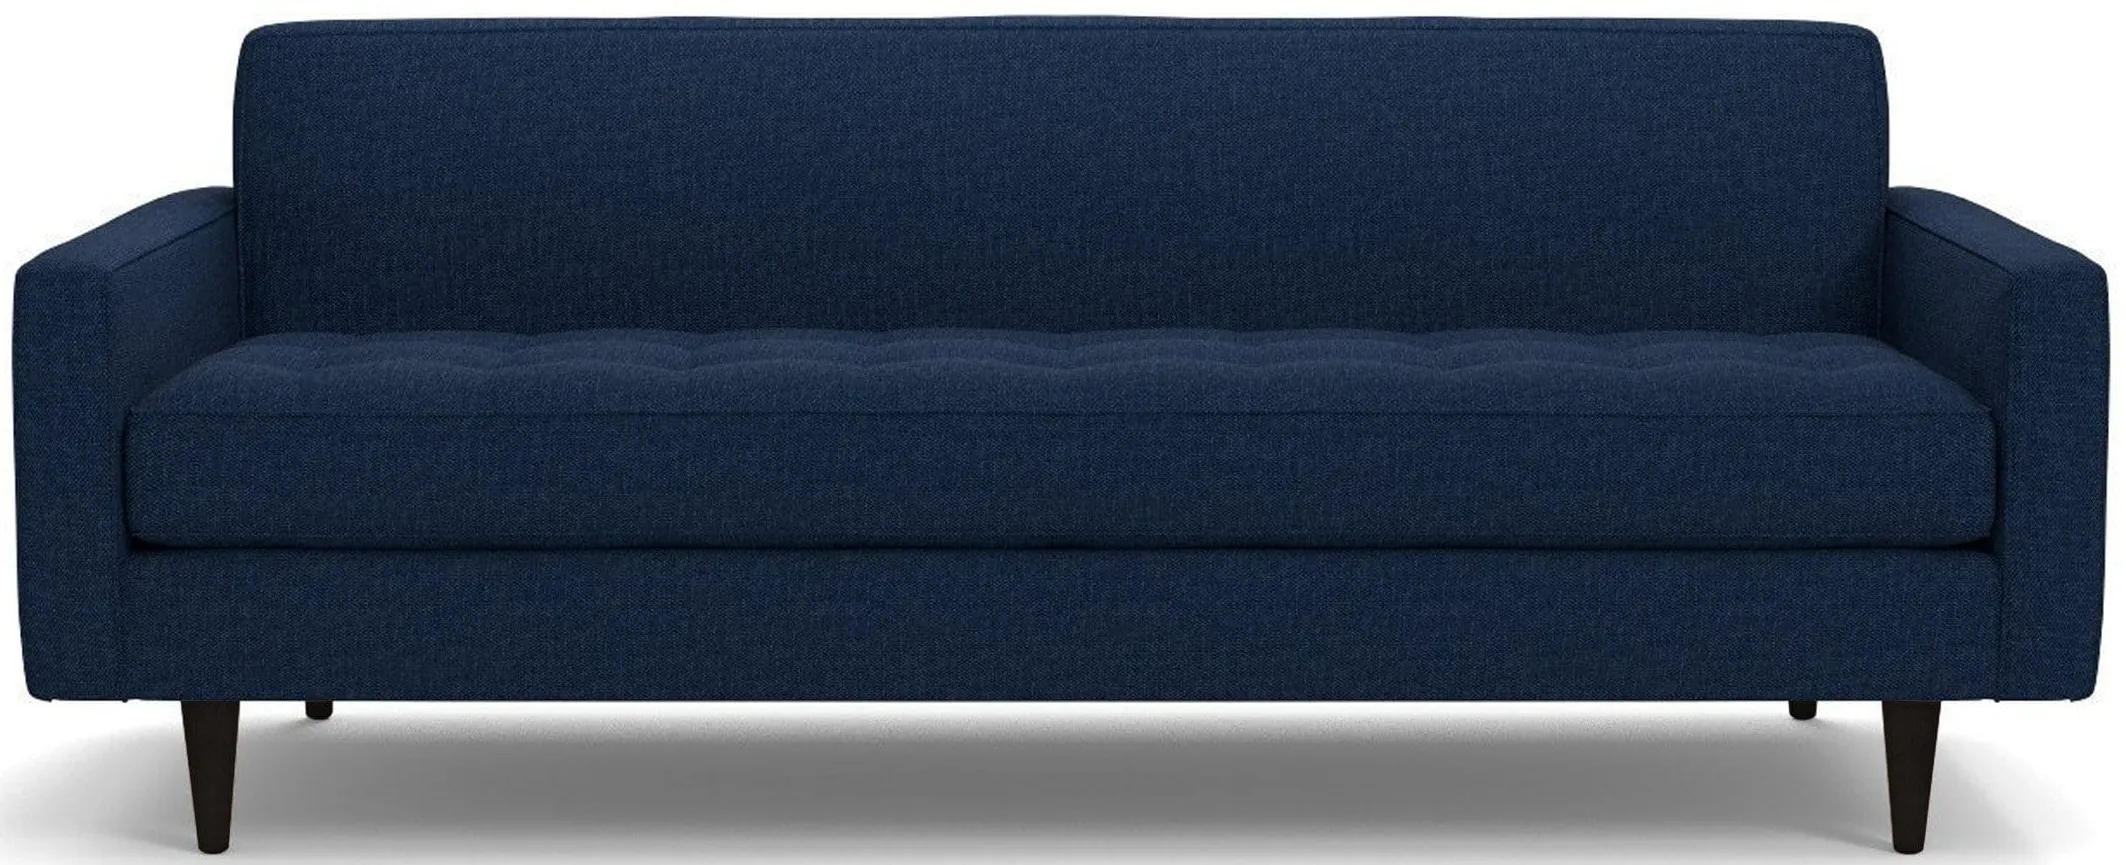 Monroe Sofa